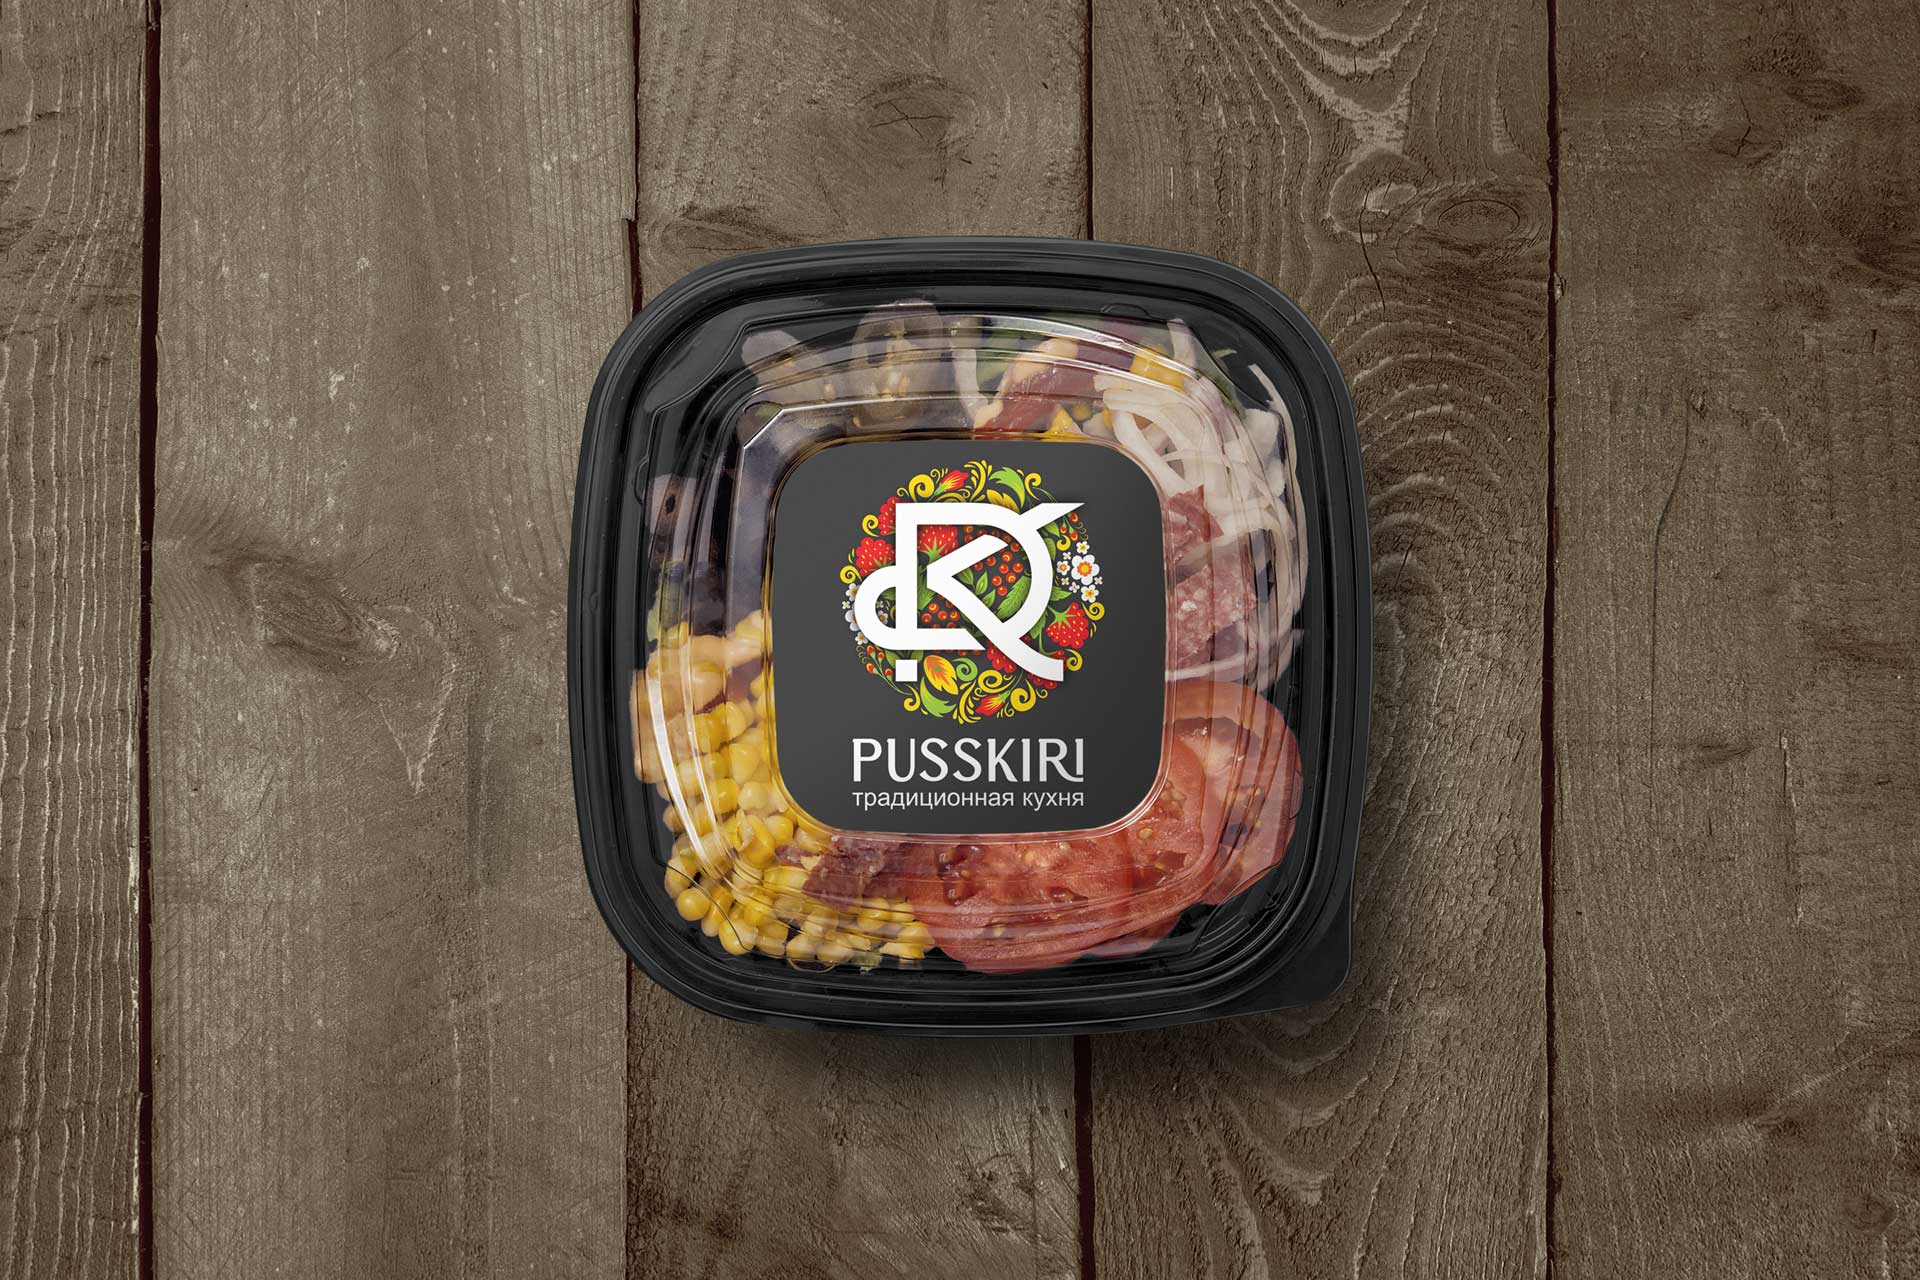 PUSSKIRI Label Design